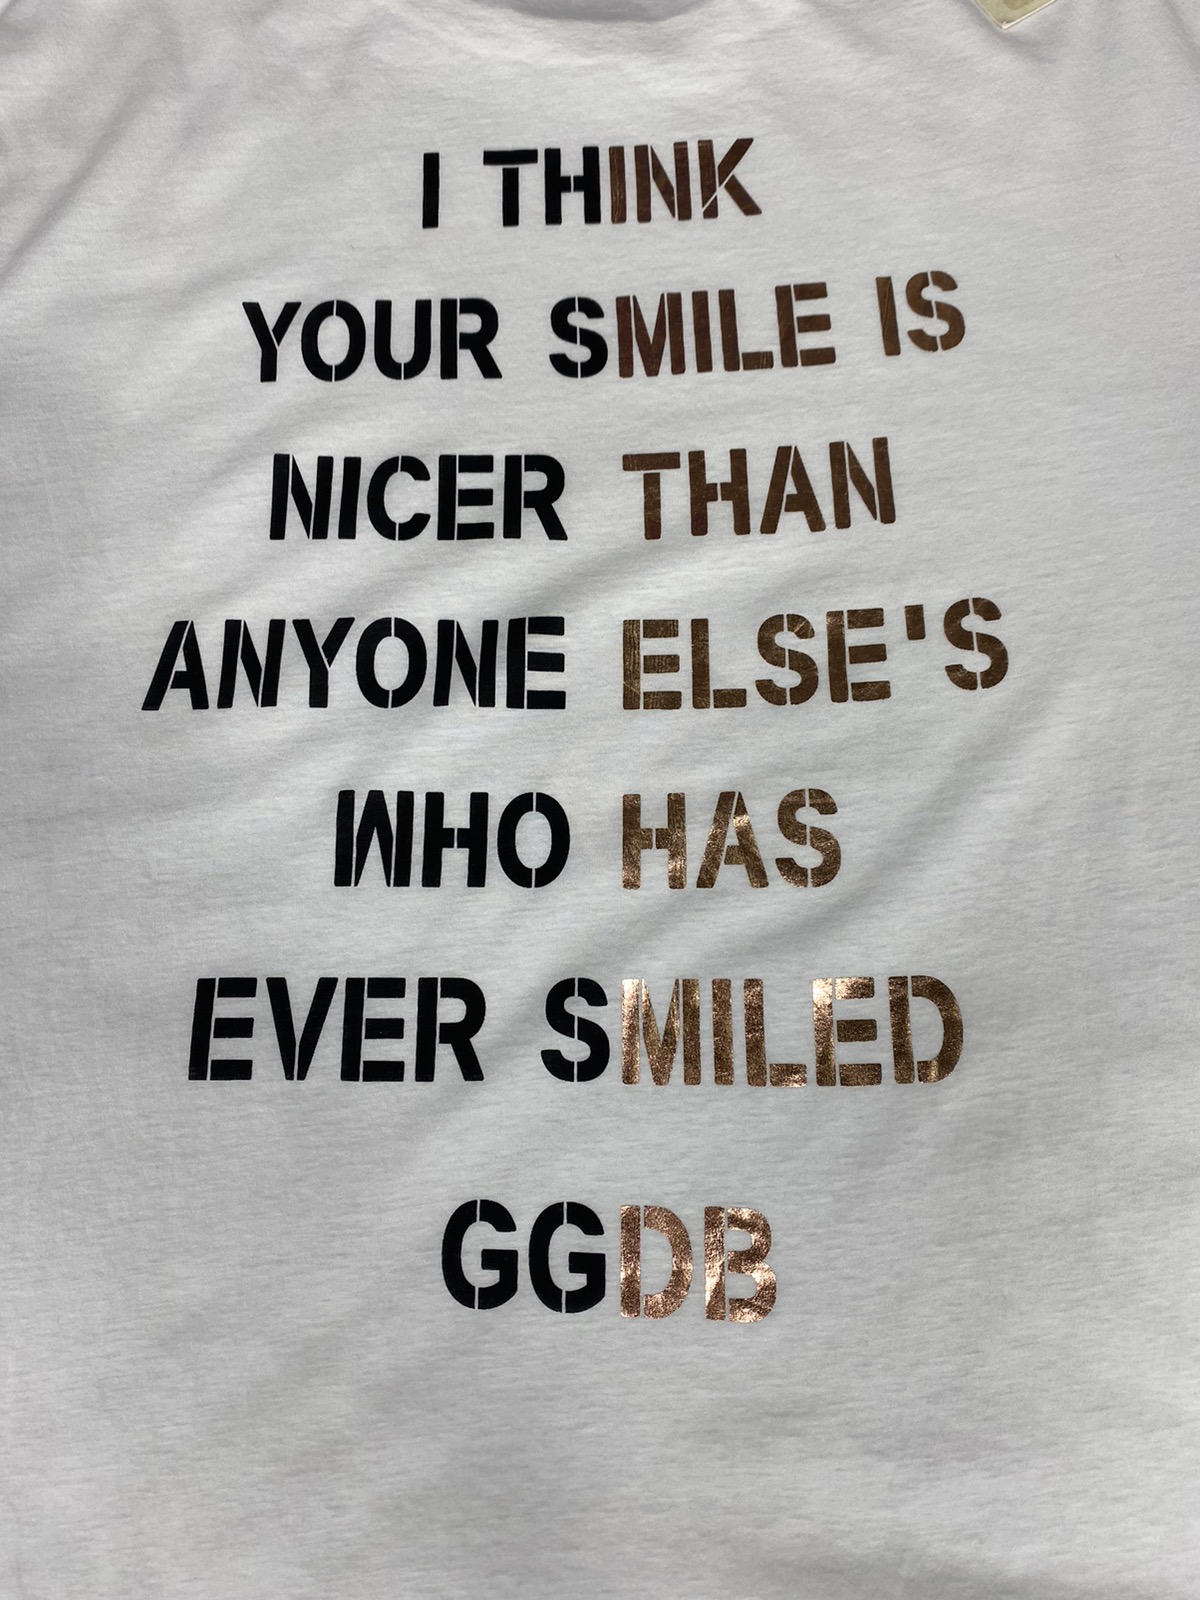 GGDB Golden Goose Deluxe Brand - 3